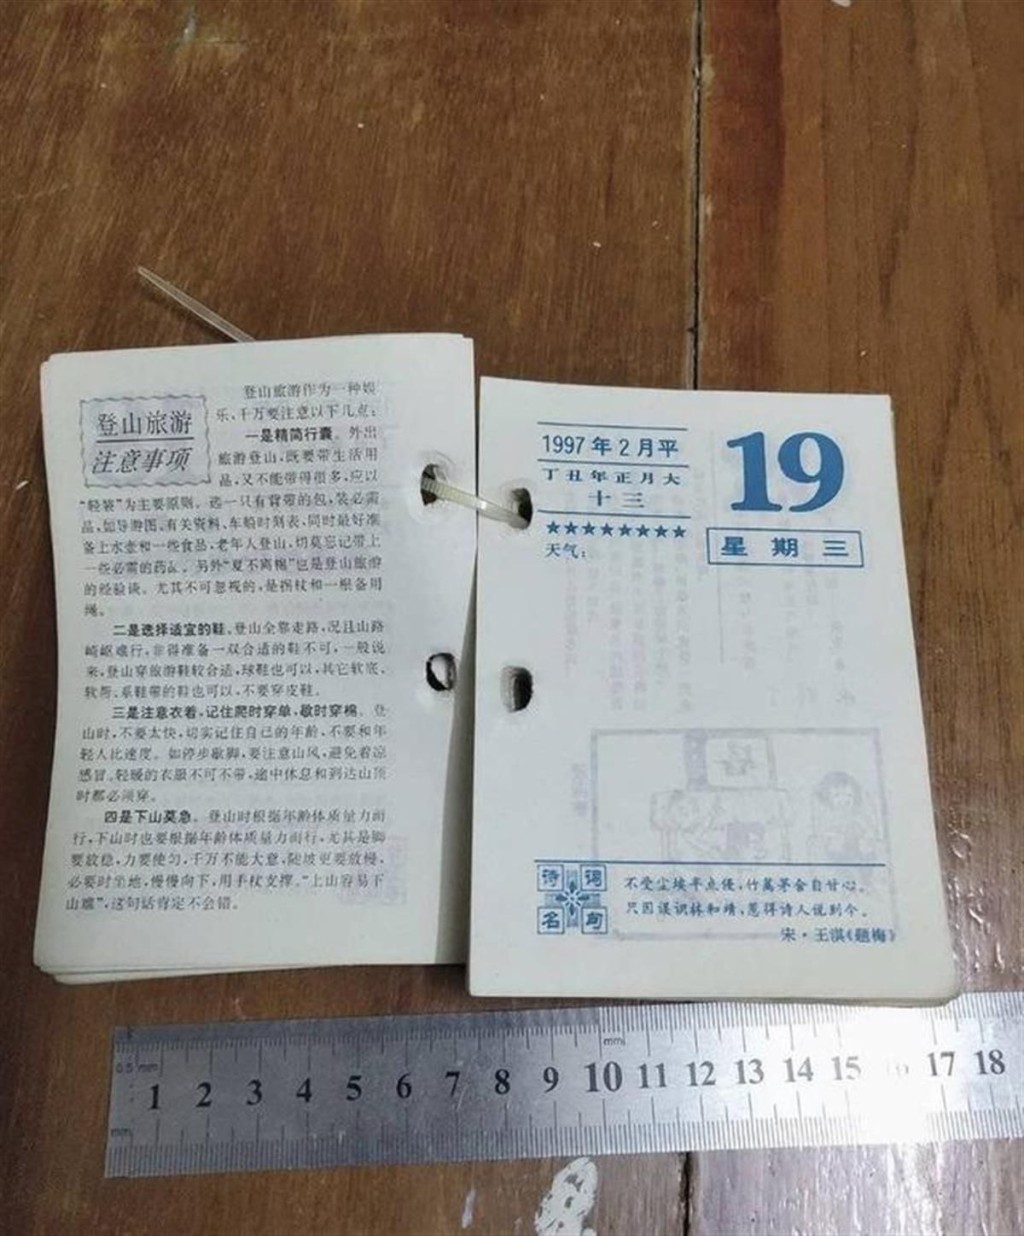 1996年的日历卖到27元一张，有人作为生日礼物。 图为商家出售的老日历样品。